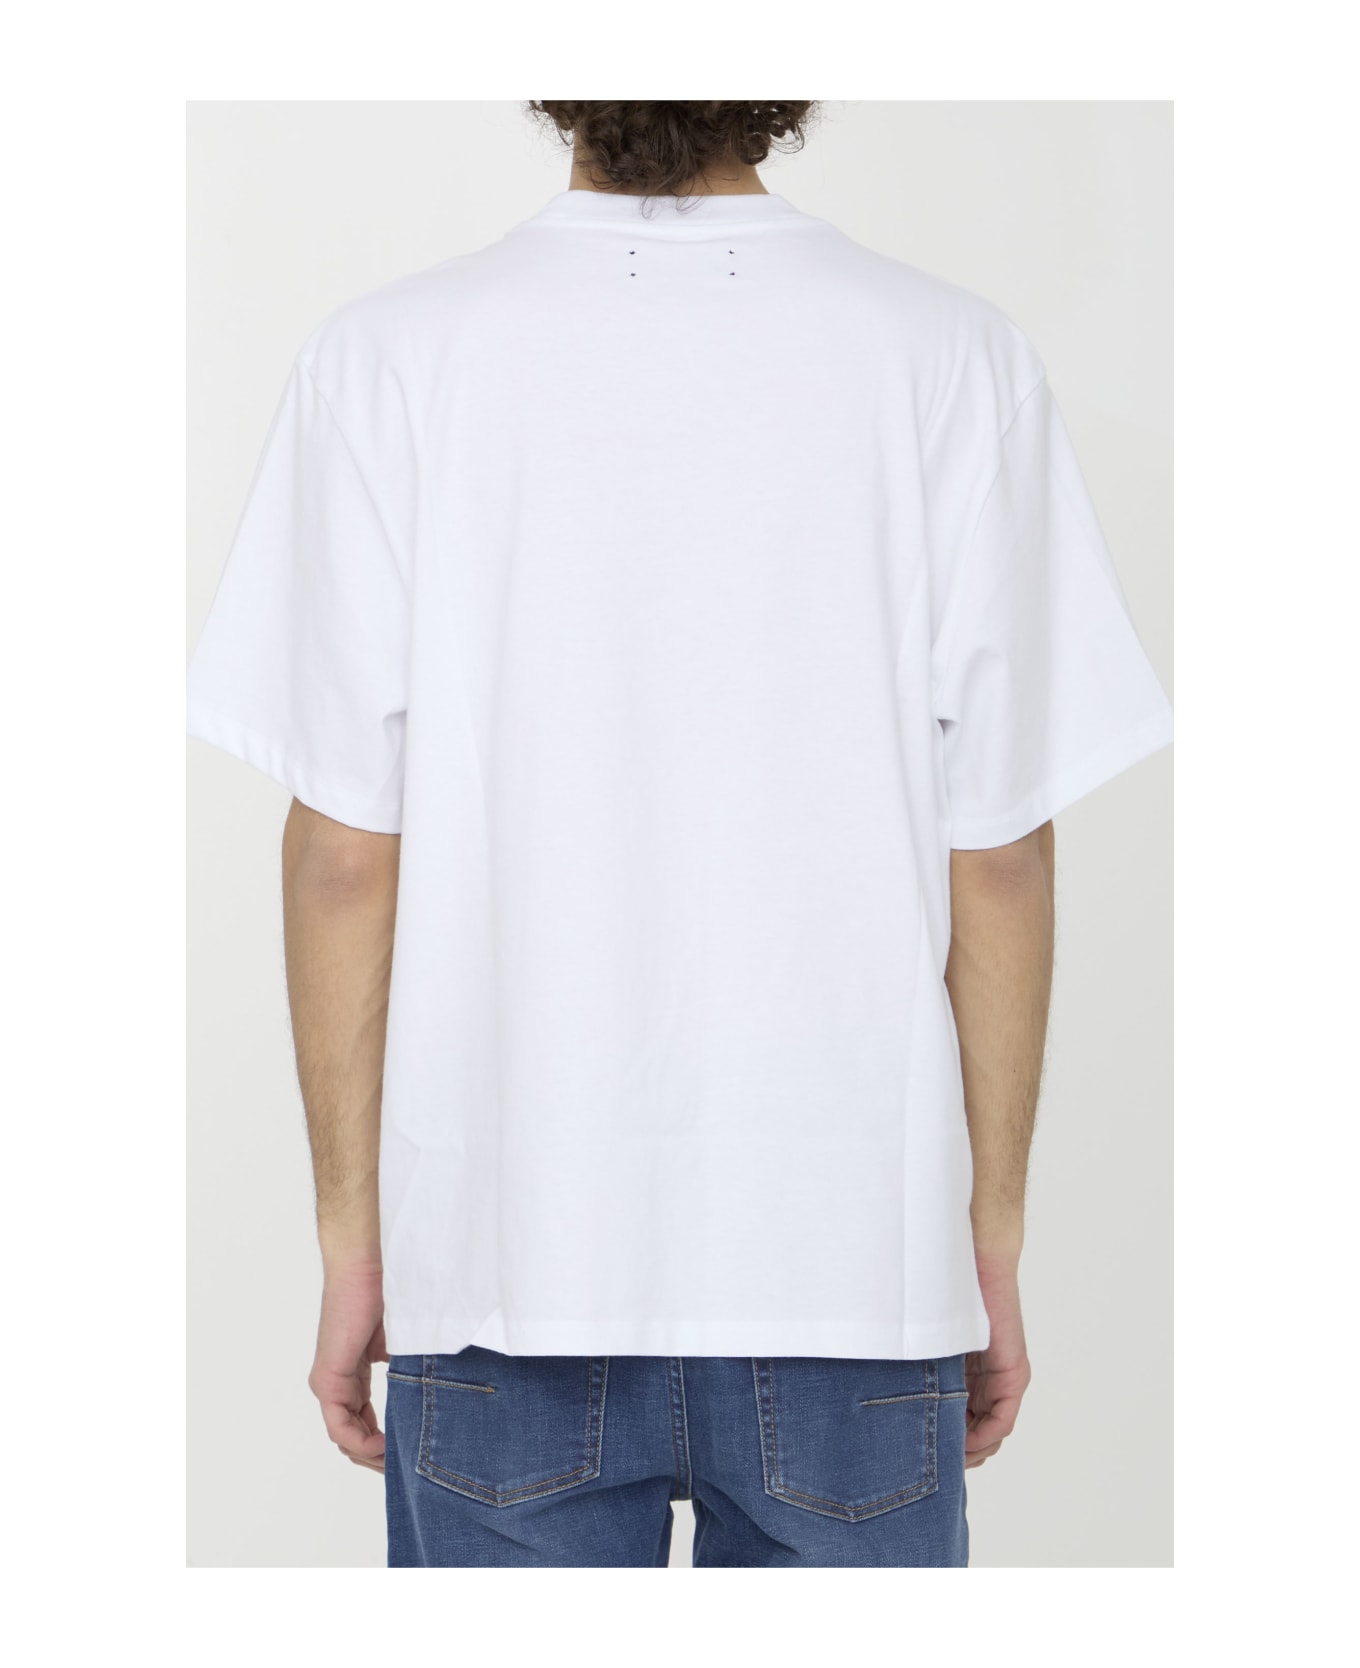 AMIRI Core Logo T-shirt - WHITE